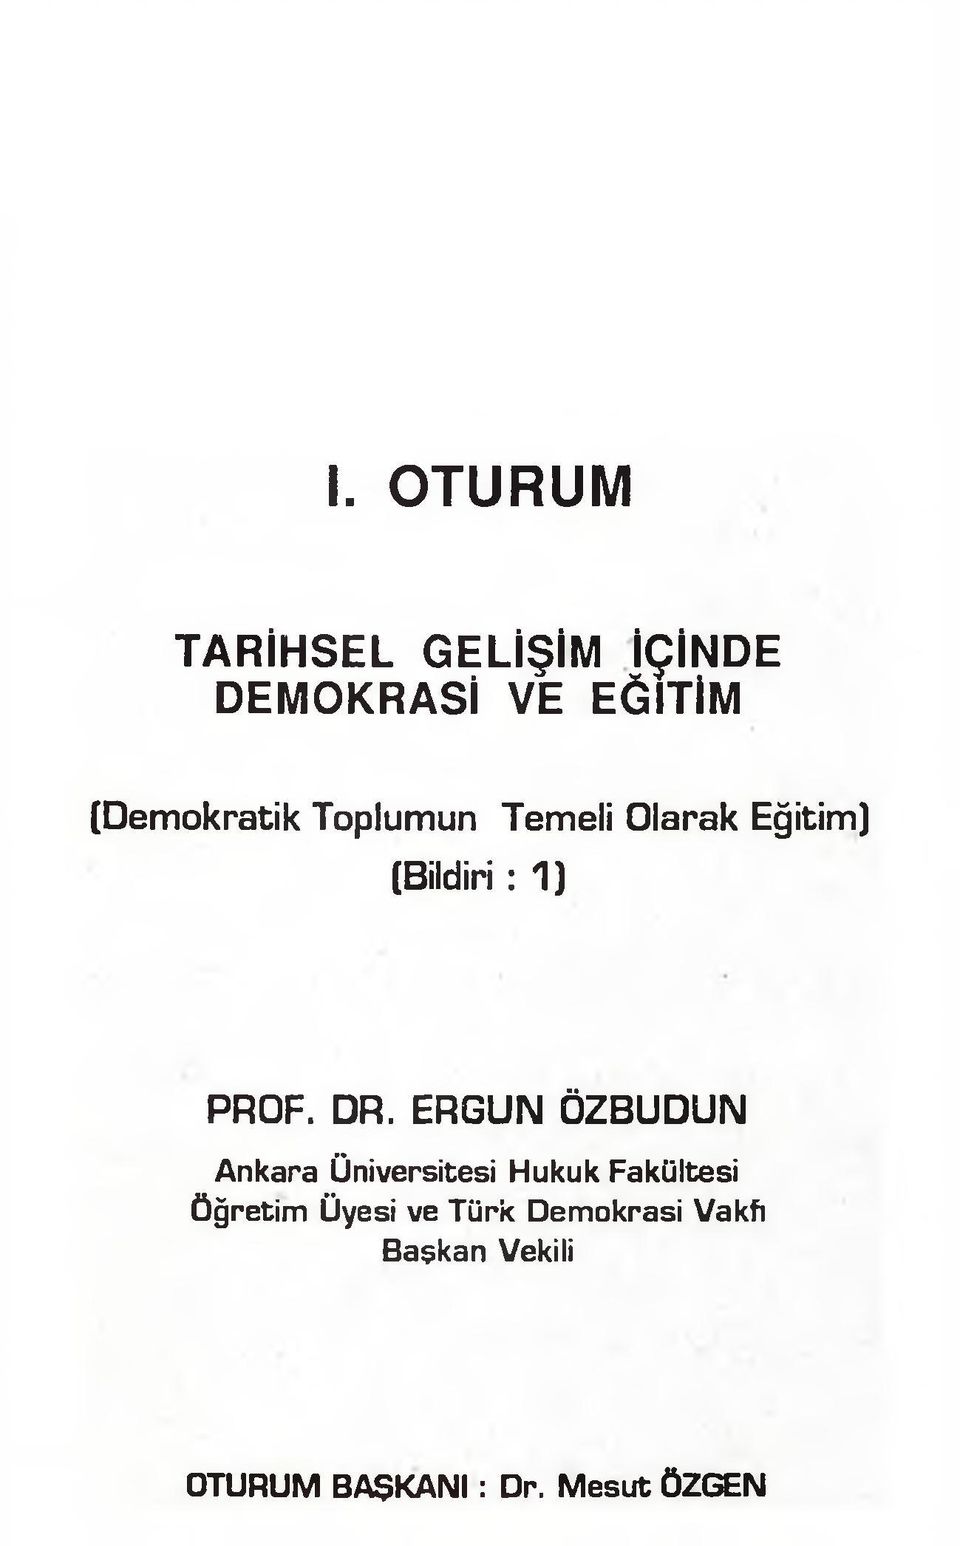 DR. ERGUN ÖZBUDUN Ankara Üniversitesi Hukuk Fakültesi Öğretim